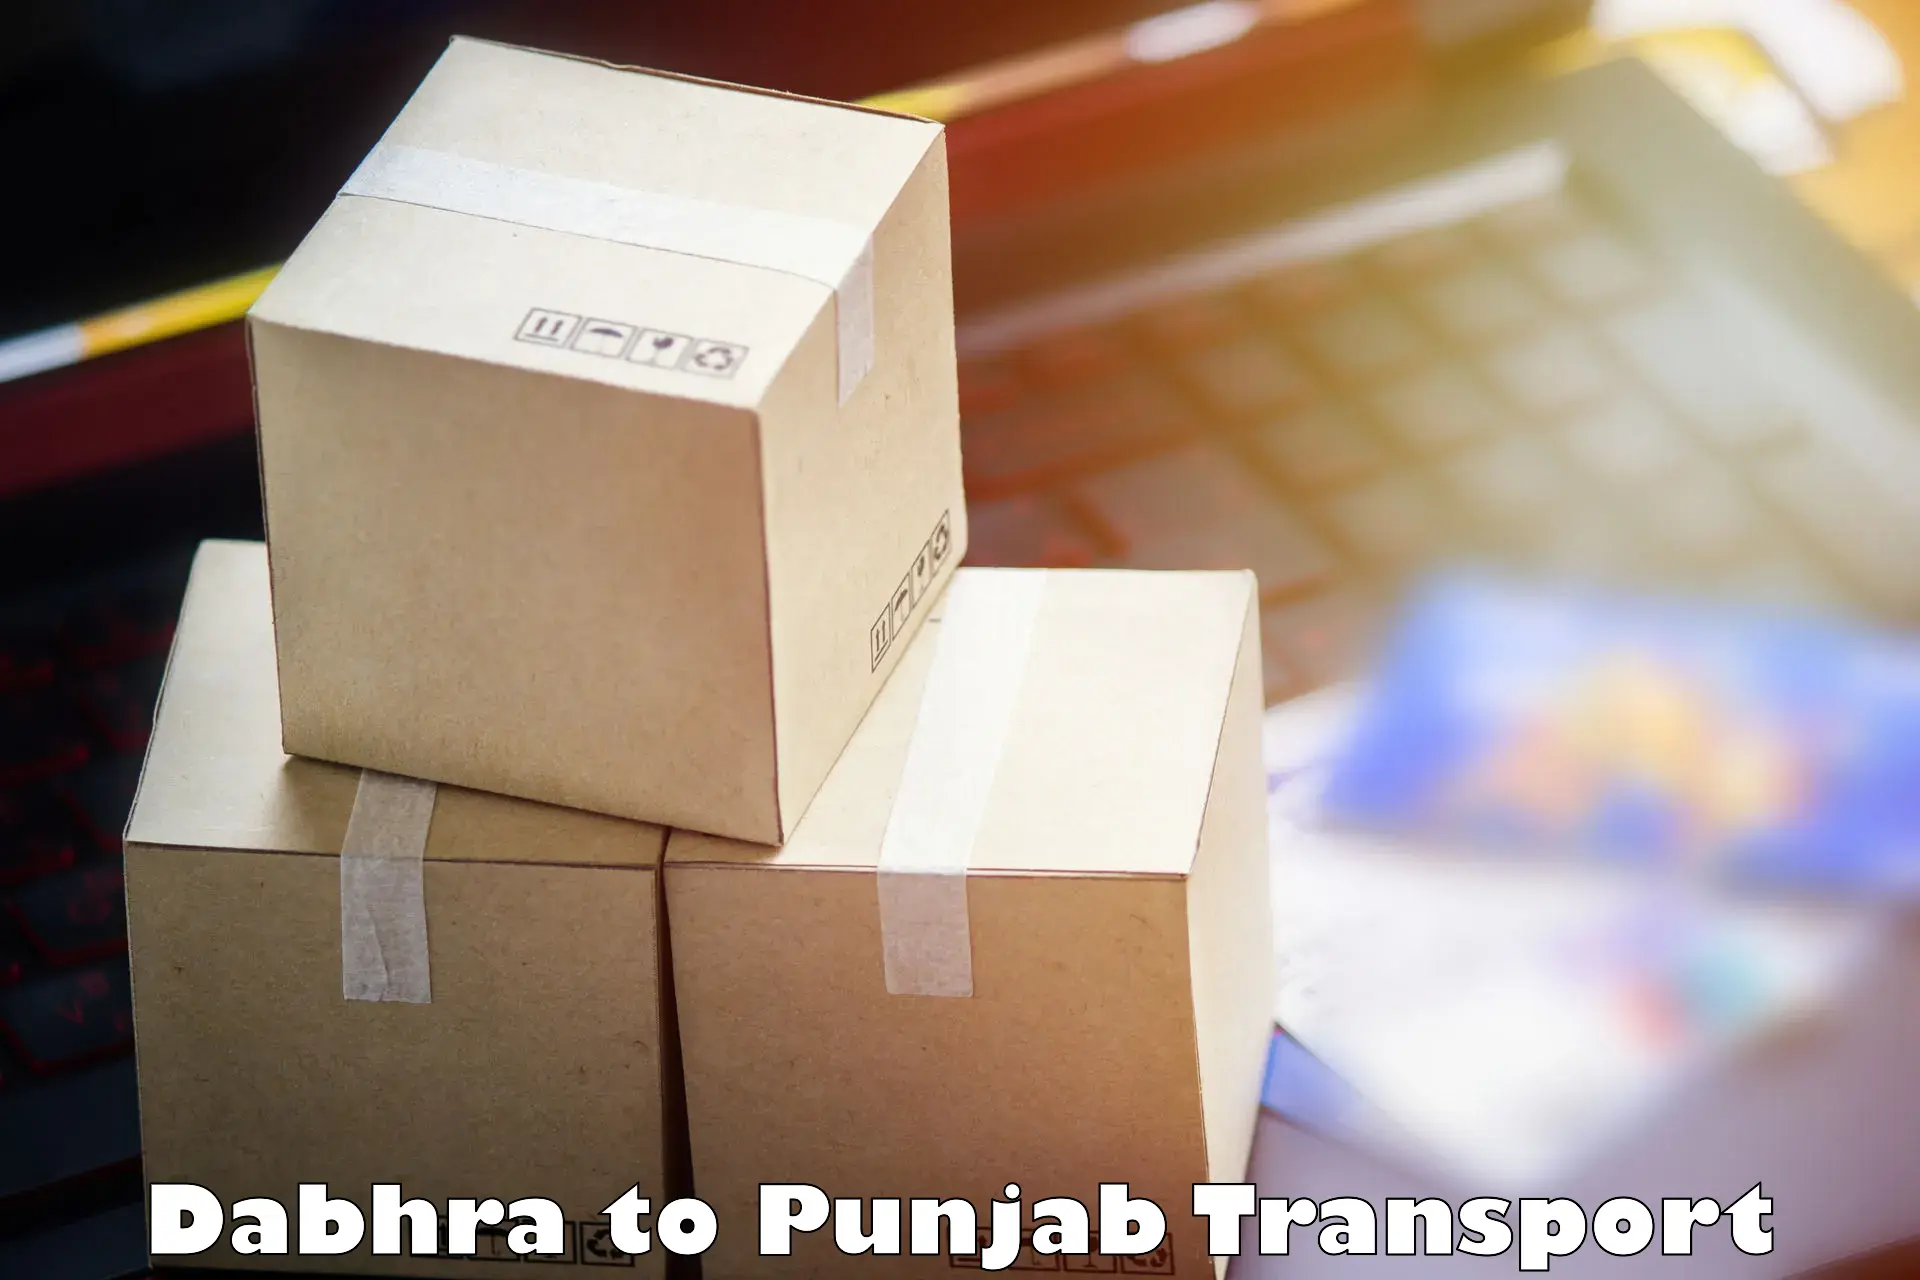 Transportation services Dabhra to Rupnagar